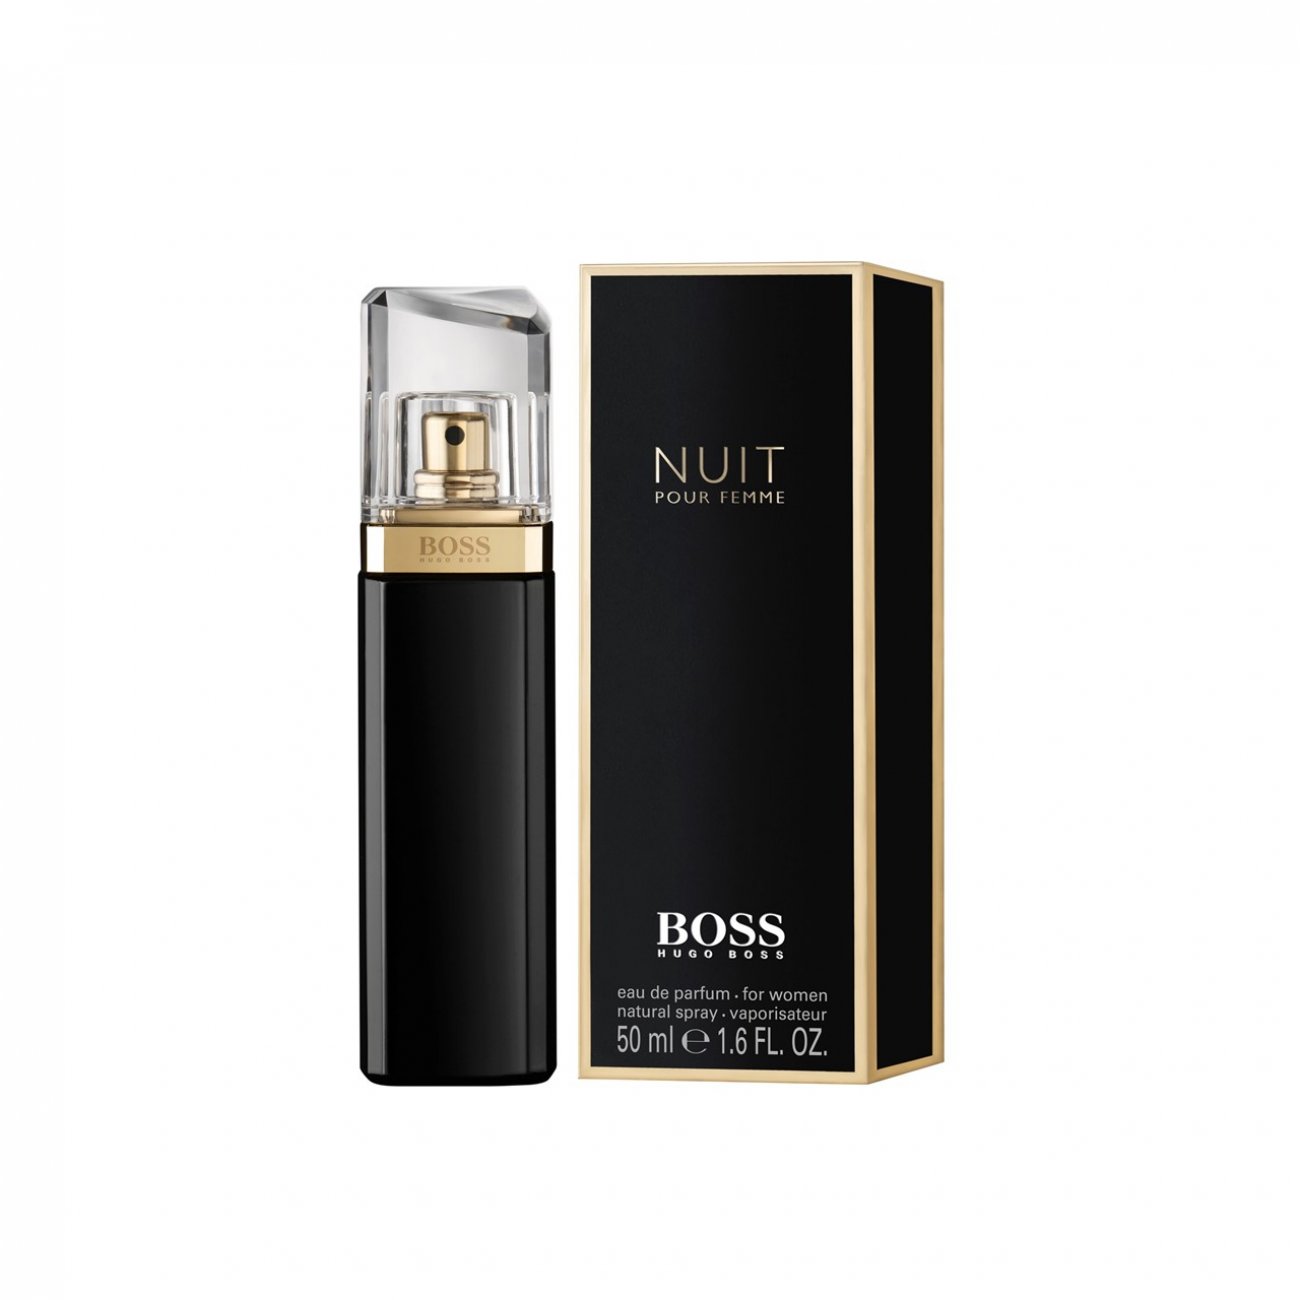 zone Uitgang Airco Buy Hugo Boss Boss Nuit Pour Femme Eau de Parfum 50ml (1.7fl oz) · USA